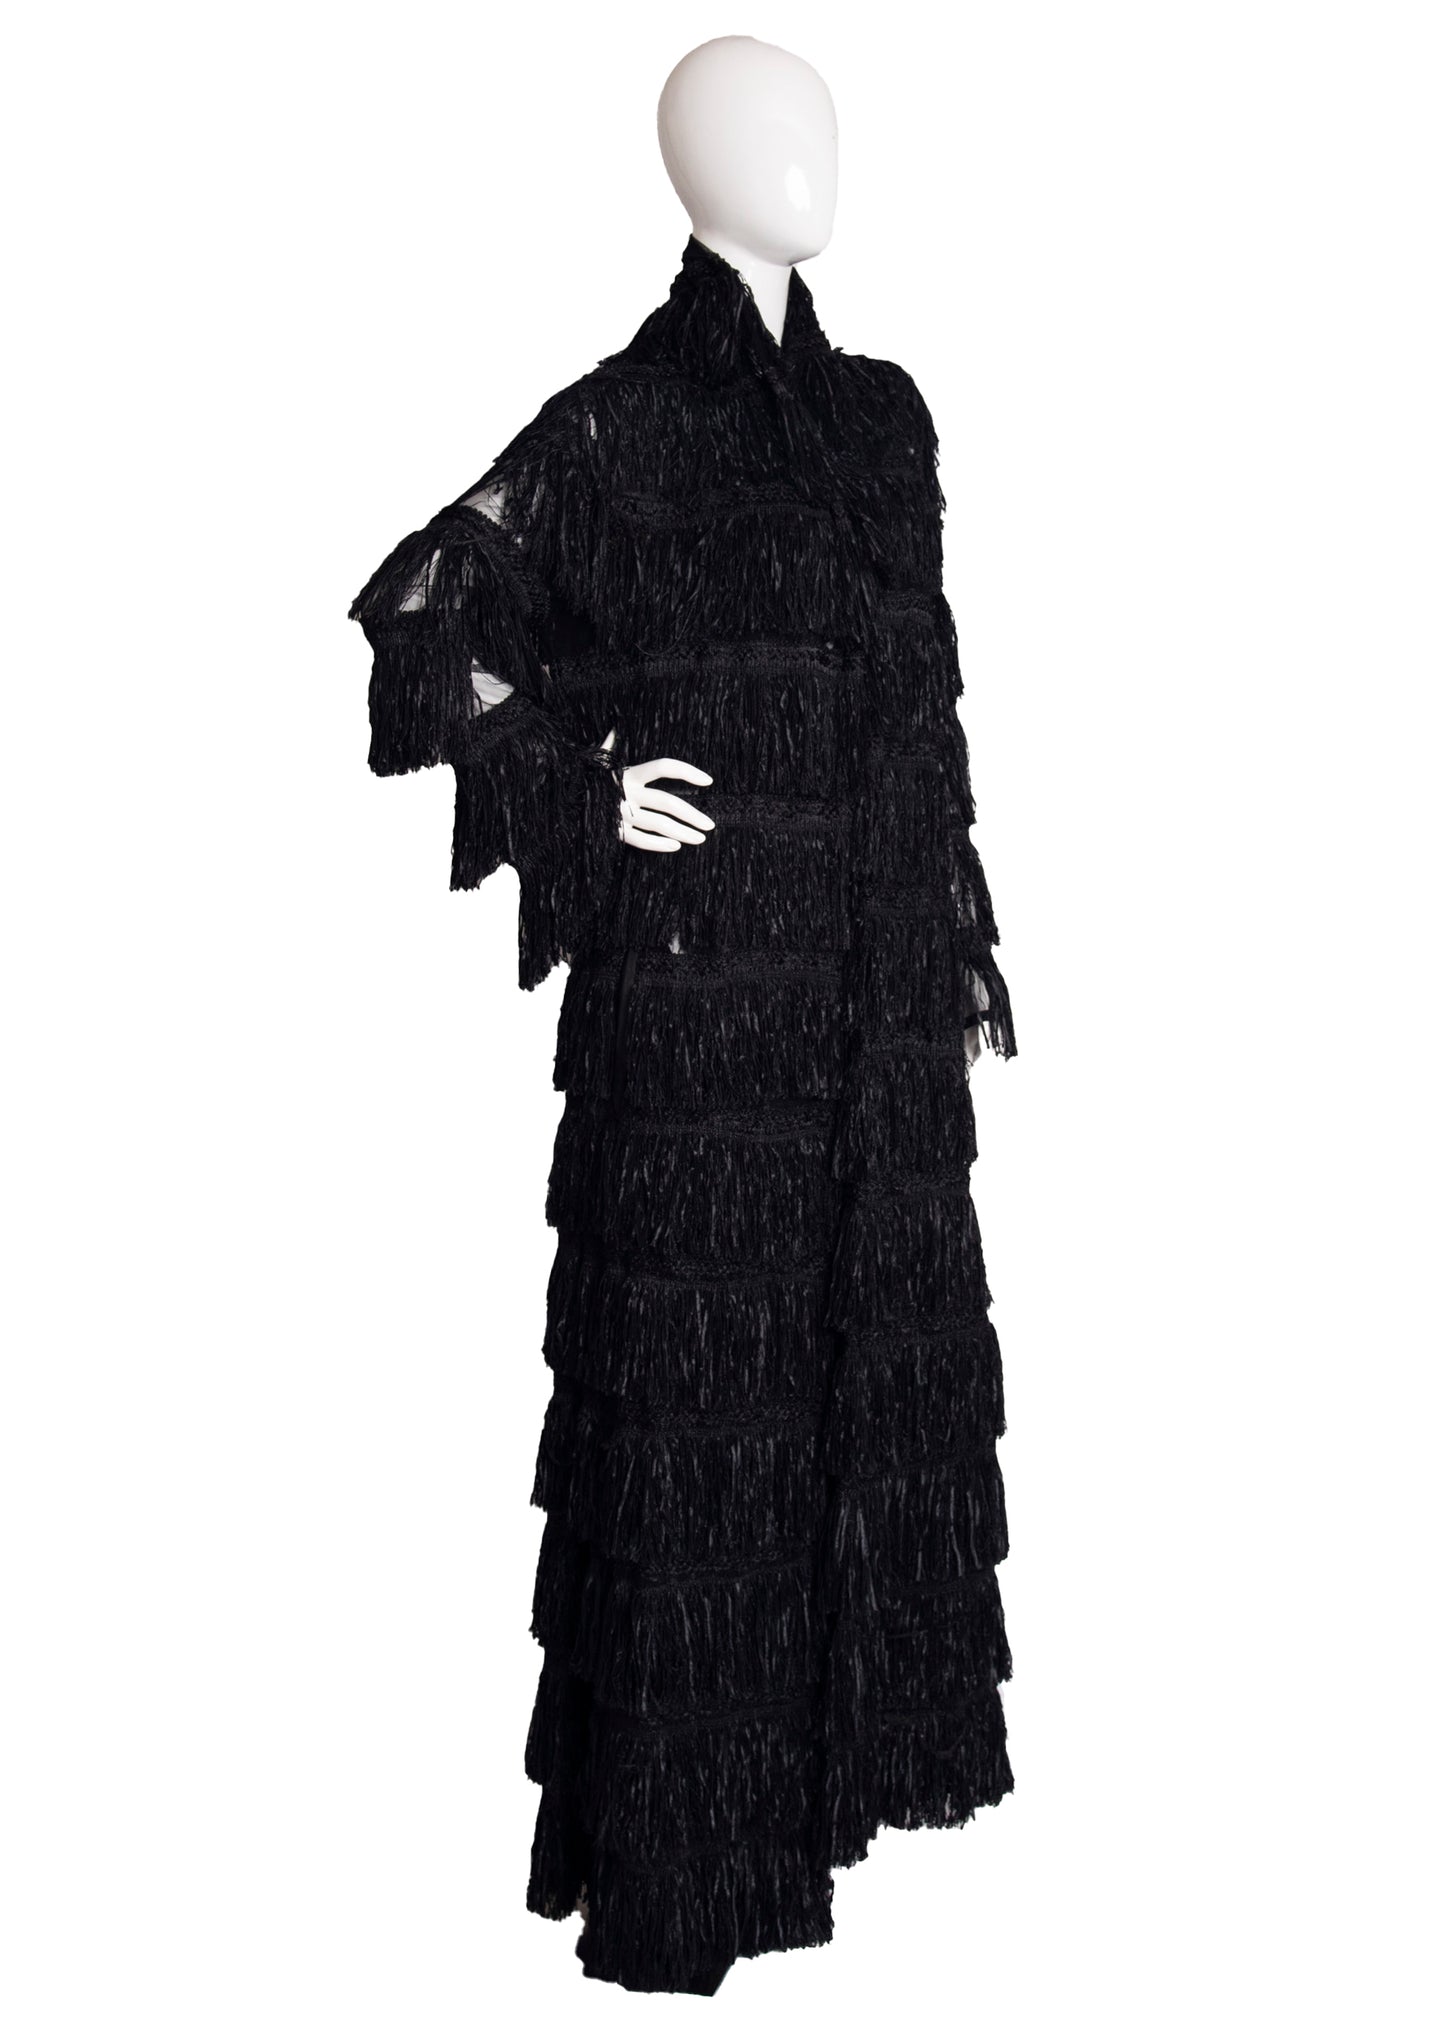 Steven Tyler Black Fringe Coat M